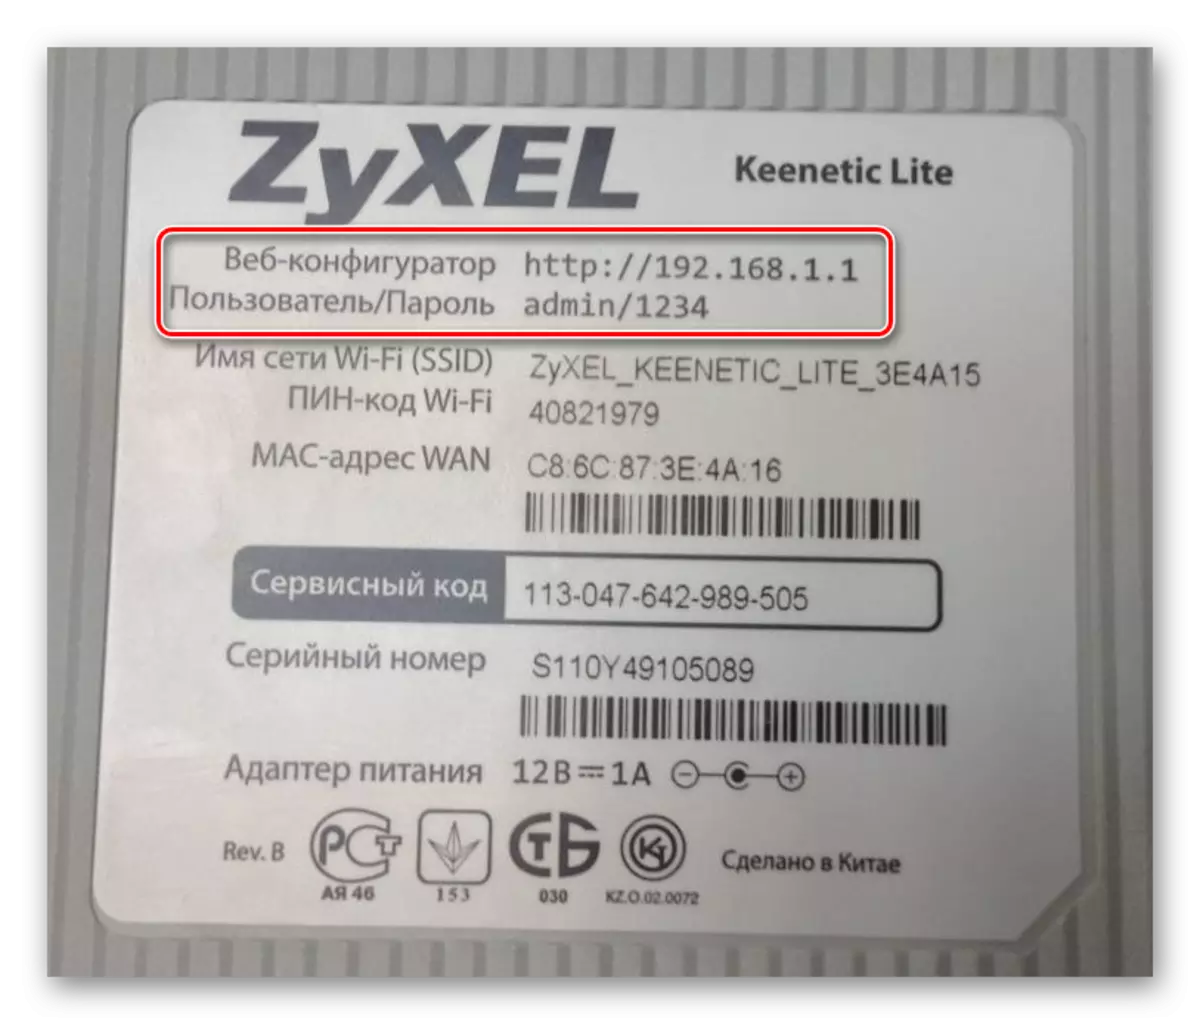 Aufkleber mit grundlegenden Parametern Zyxel Keepetic Lite